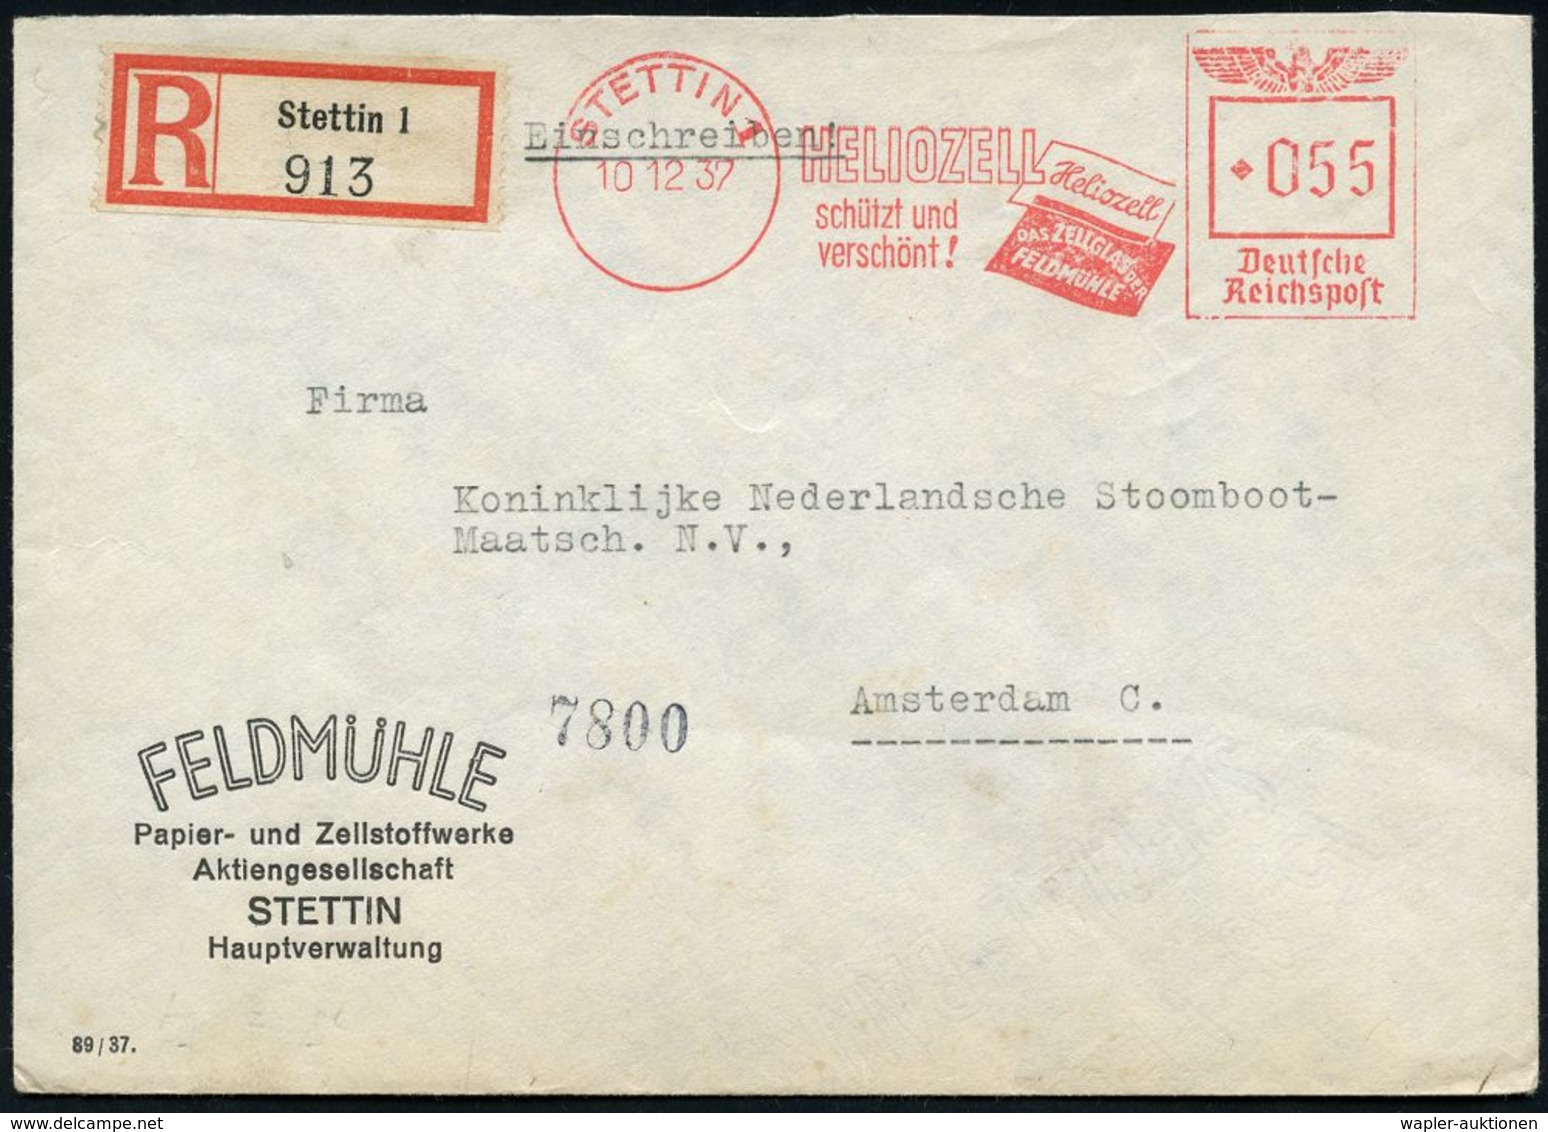 PAPIER / PAPIERVERARBEITUNG / ZELLSTOFF : STETTIN 1/ HELIOZELL/ Schützt U./ Verschönt!.. 1937 (10.12.) AFS 055 Pf. (Heli - Unclassified